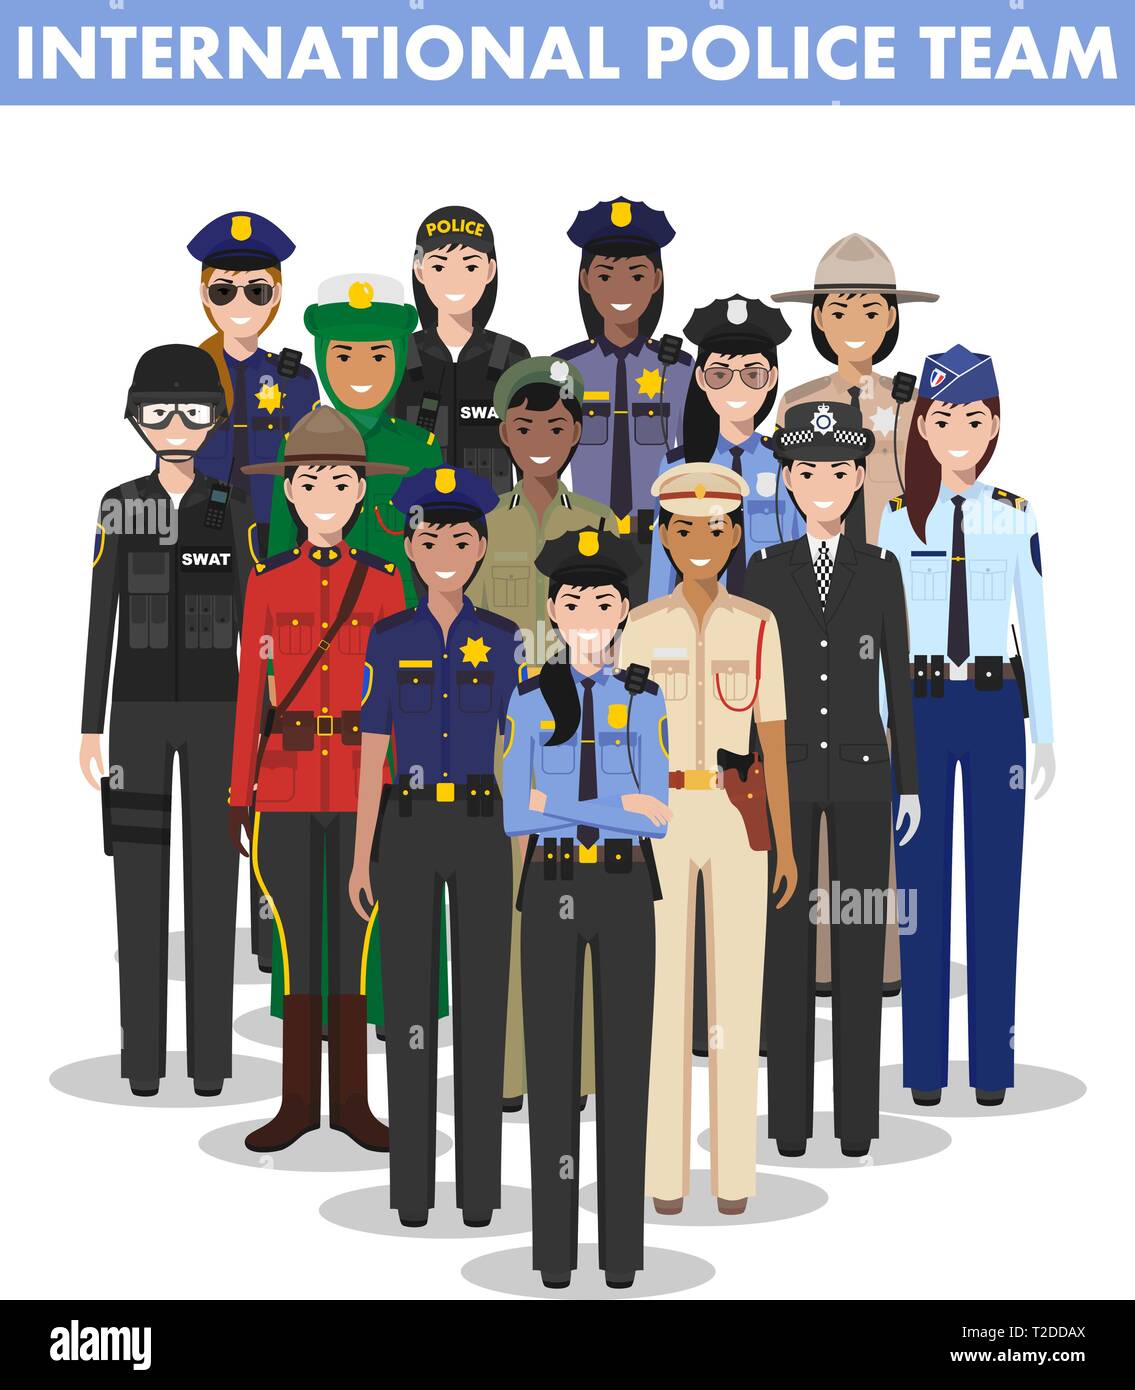 Di polizia internazionale il concetto di persone. Illustrazione dettagliata di SWAT officer, poliziotto, poliziotta e sheriff in stile piatto su sfondo bianco Illustrazione Vettoriale